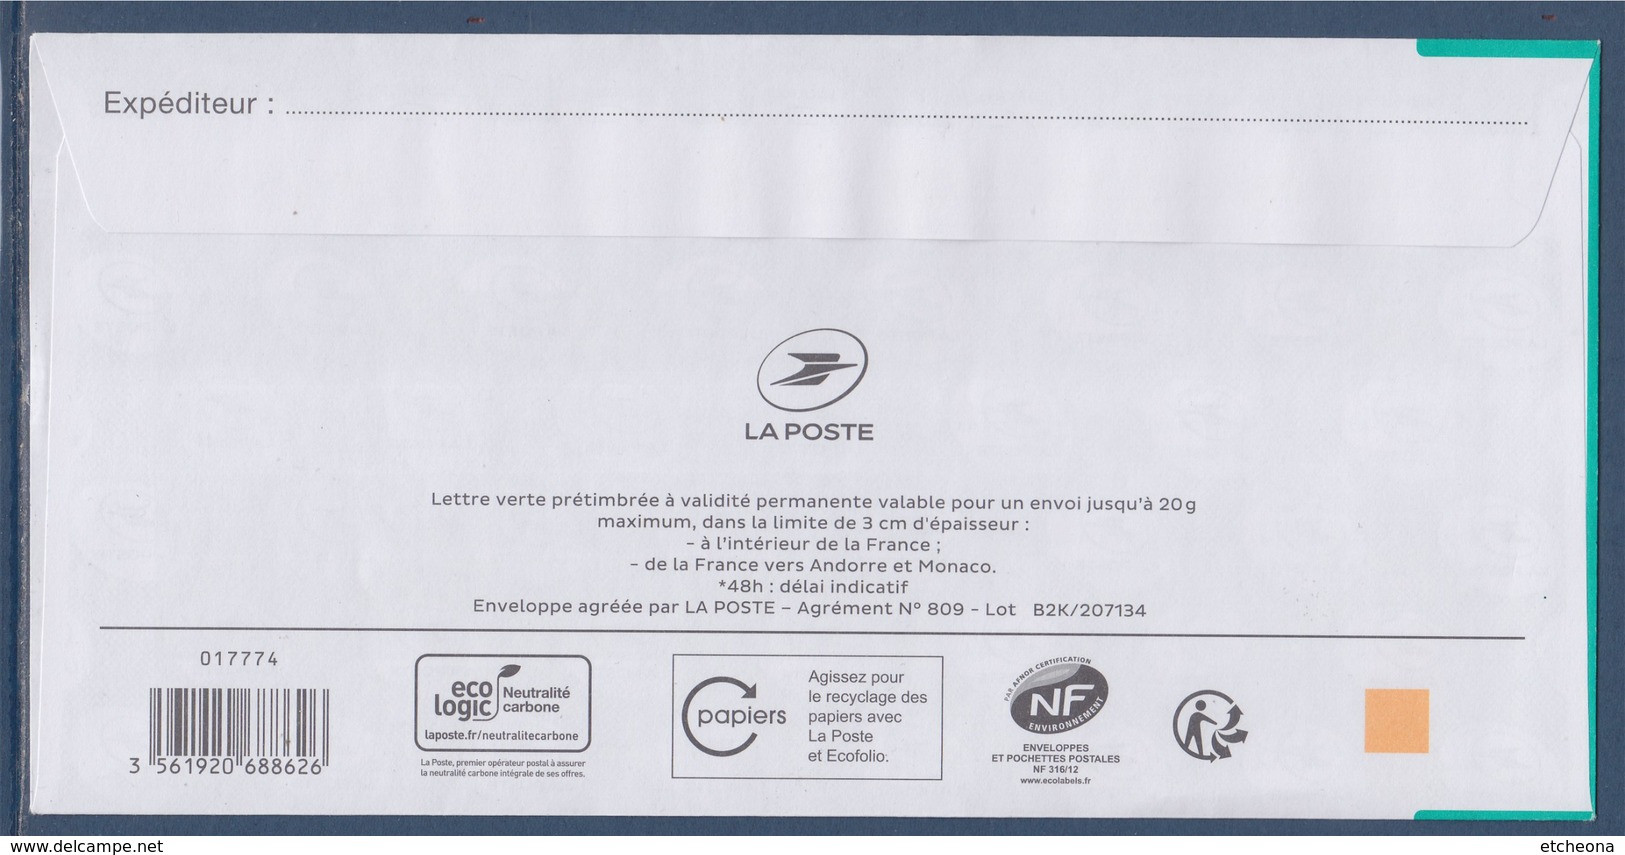 Enveloppe Entier Repiquage Privé TVP LV ASCPA (Association Sportive Et Culturelle Pessac Alouette) - Prêts-à-poster:private Overprinting